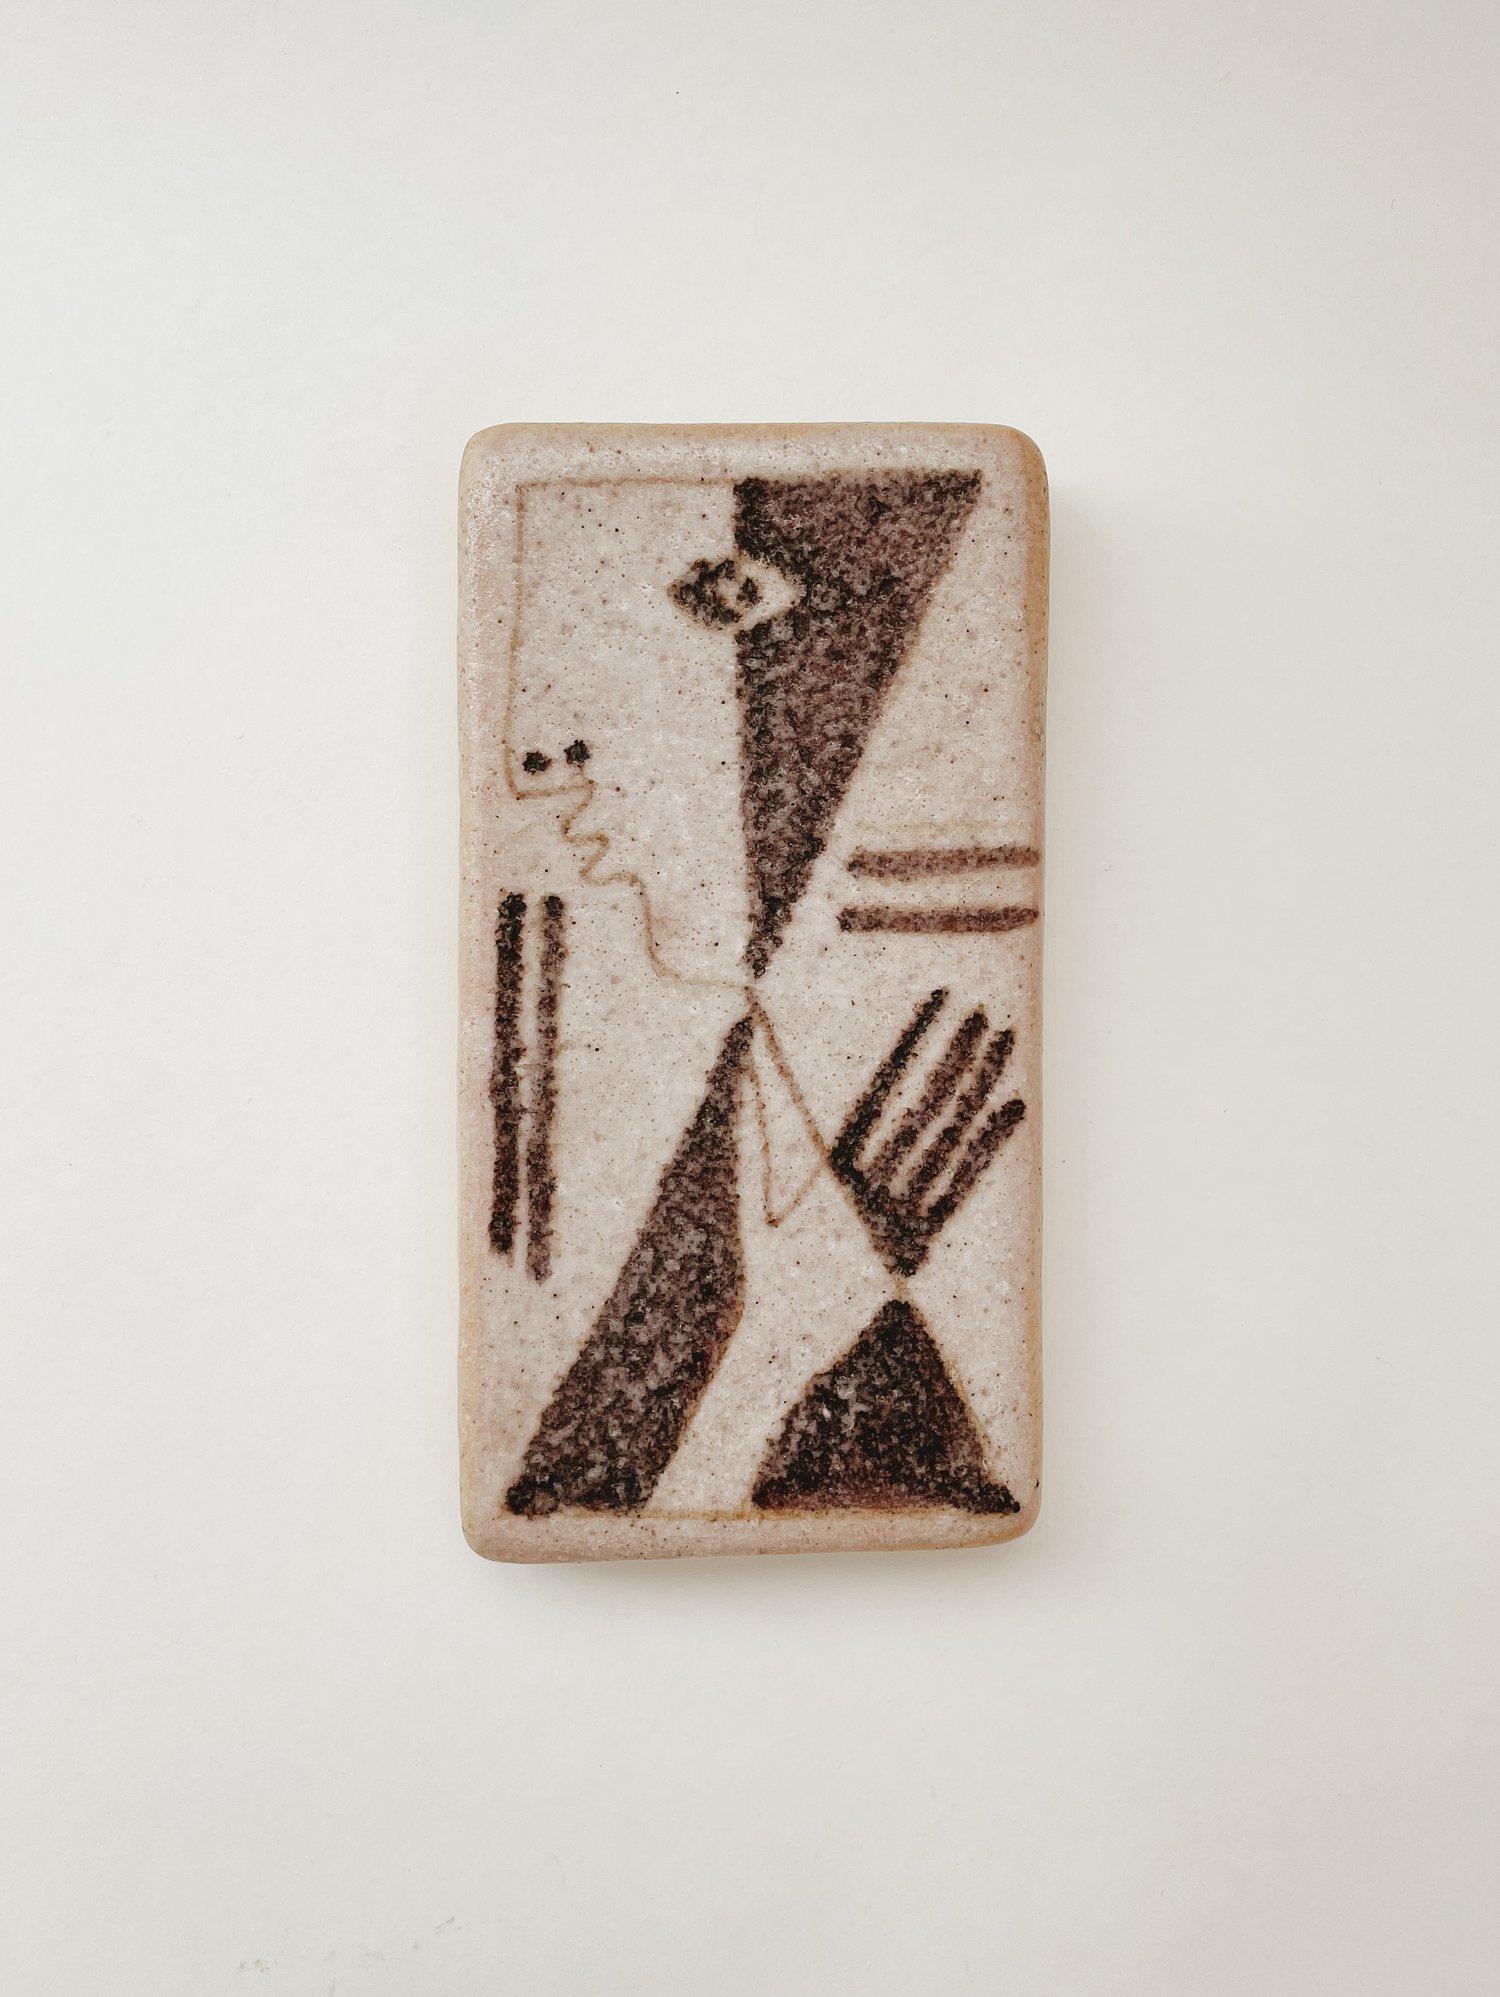 Exquise boîte de table en céramique réalisée par l'éminent céramiste italien Guido Gambone (1909-1969). L'un des céramistes les plus influents du XXe siècle, cette pièce remarquable de Gambone représente une figure cubiste en noir avec des tons